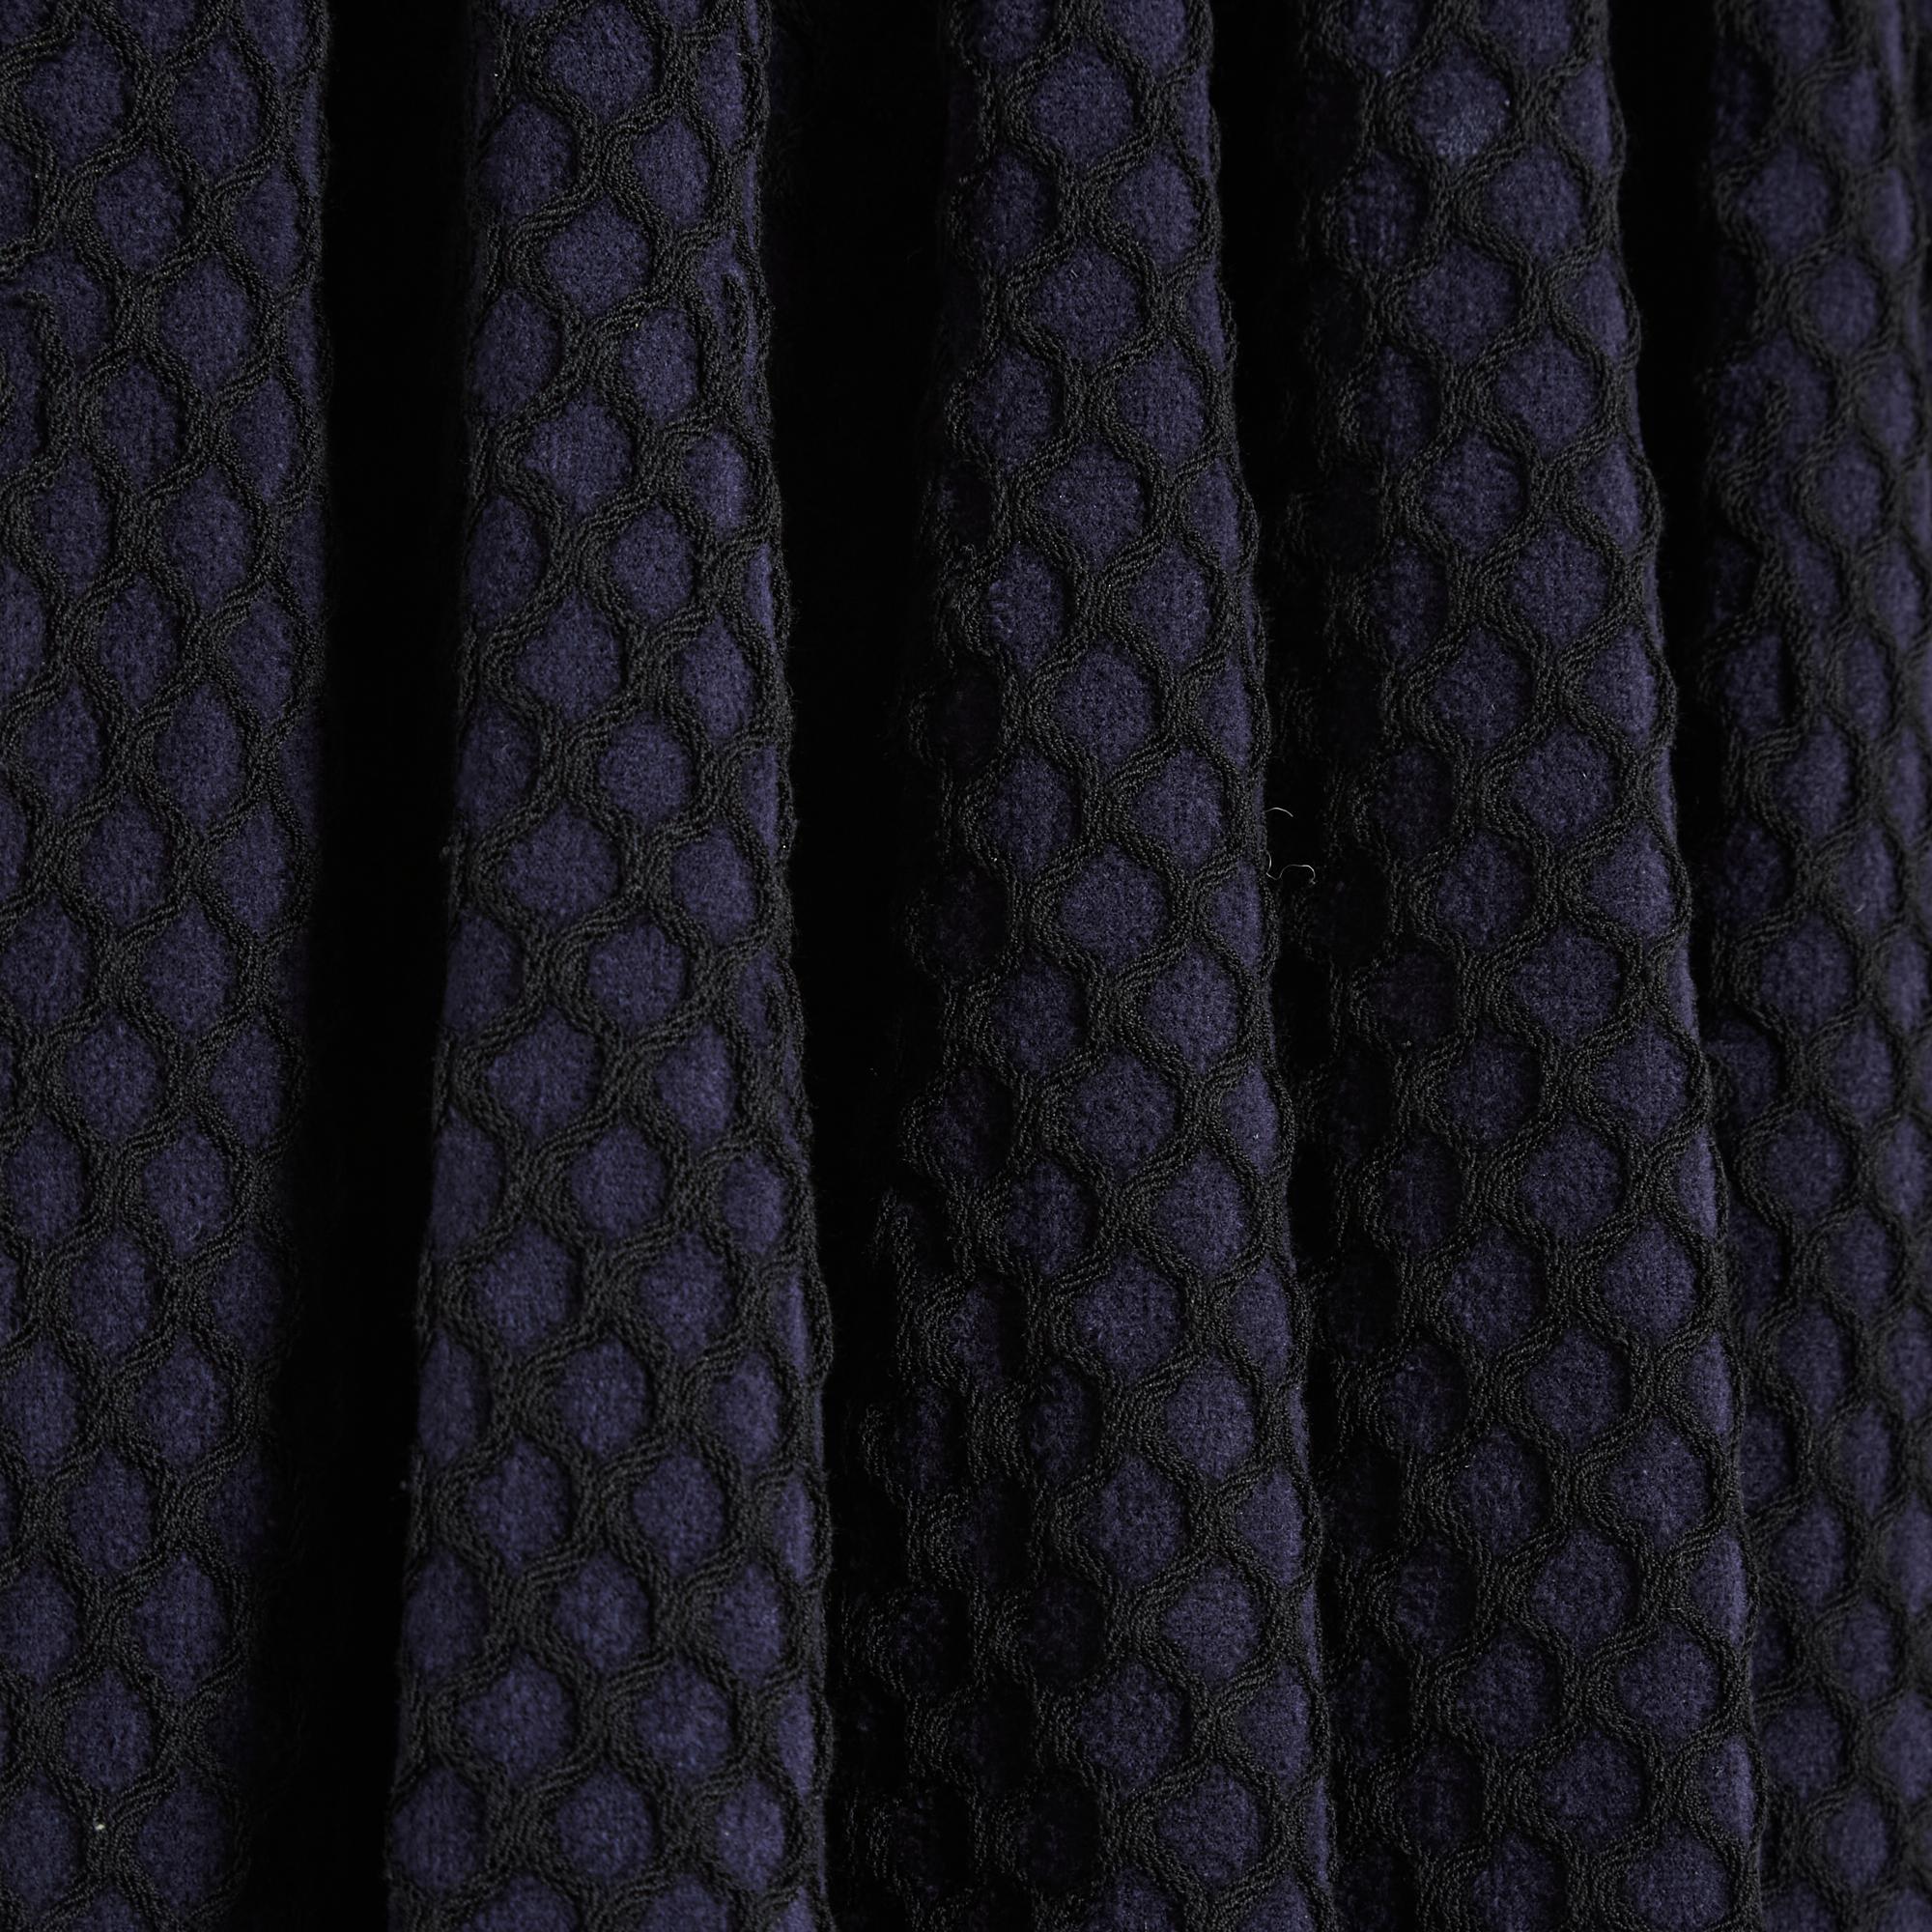 Robe Alaïa en maille épaisse mais souple de viscose mélangée bleu marine et guillochée noire, col rond, manches longues, jupe patineuse, non doublée, fermée par un long zip dans le dos. Taille 36FR, mesures prises à plat sans étirer la maille :